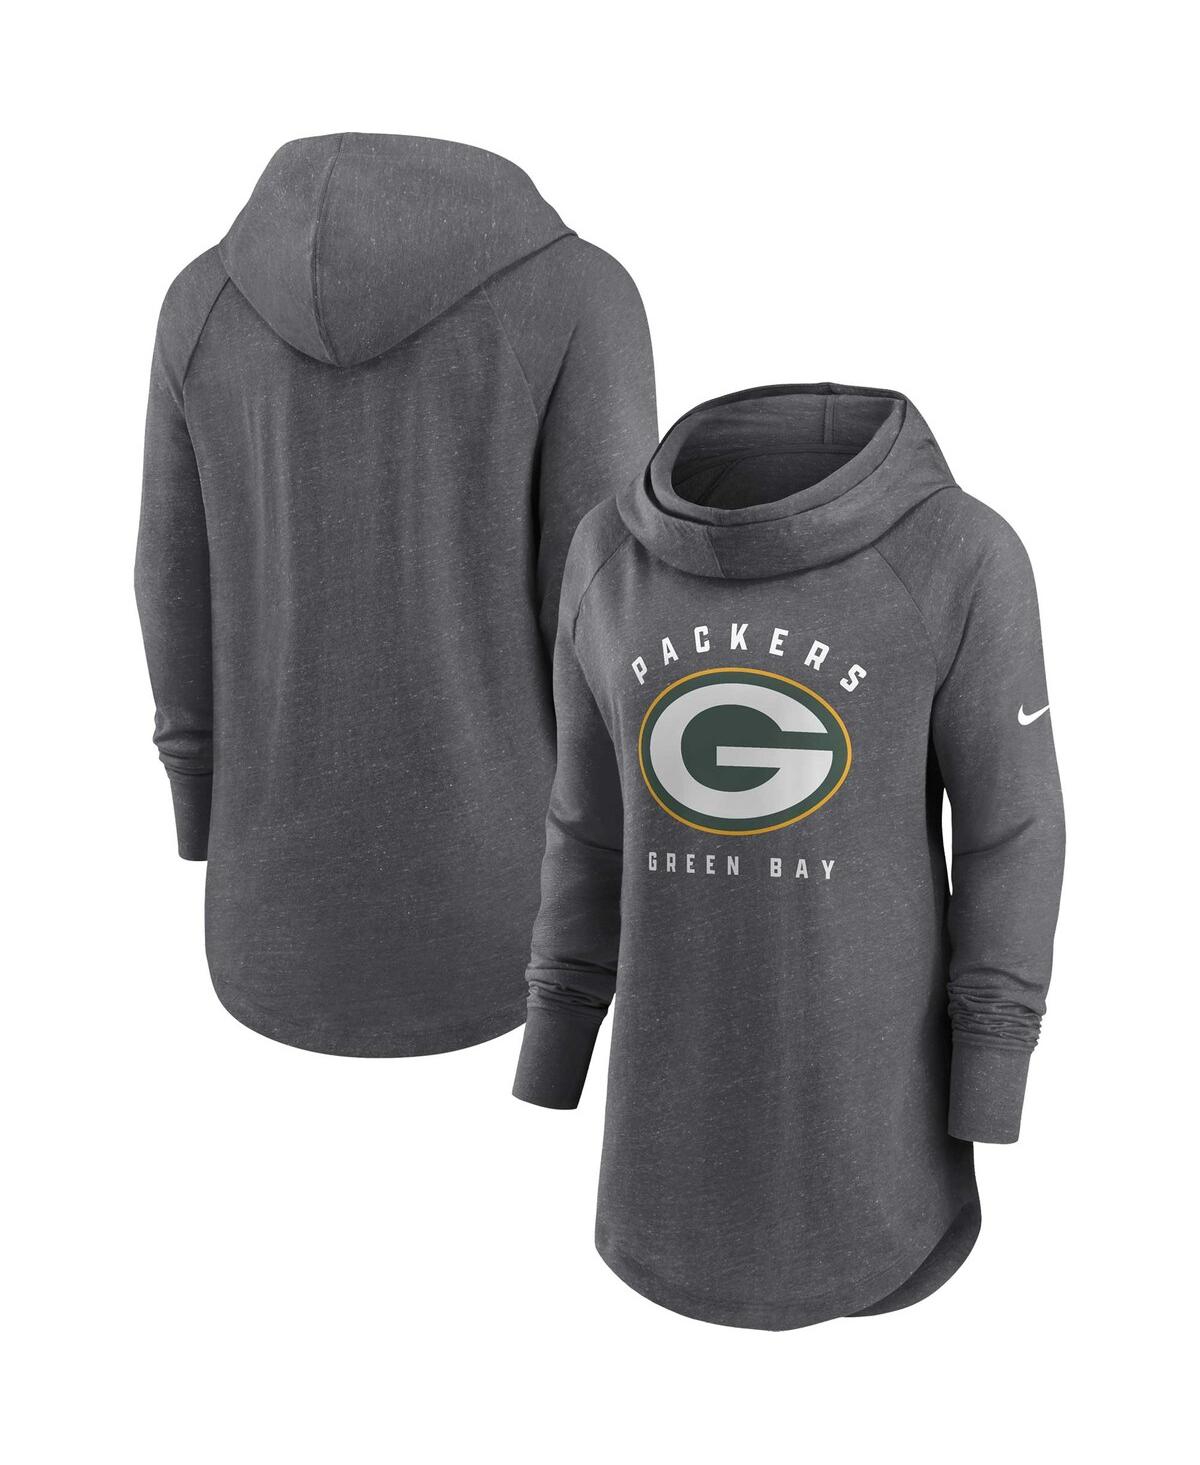 Nike Women's Team (nfl Green Bay Packers) Pullover Hoodie In Grey